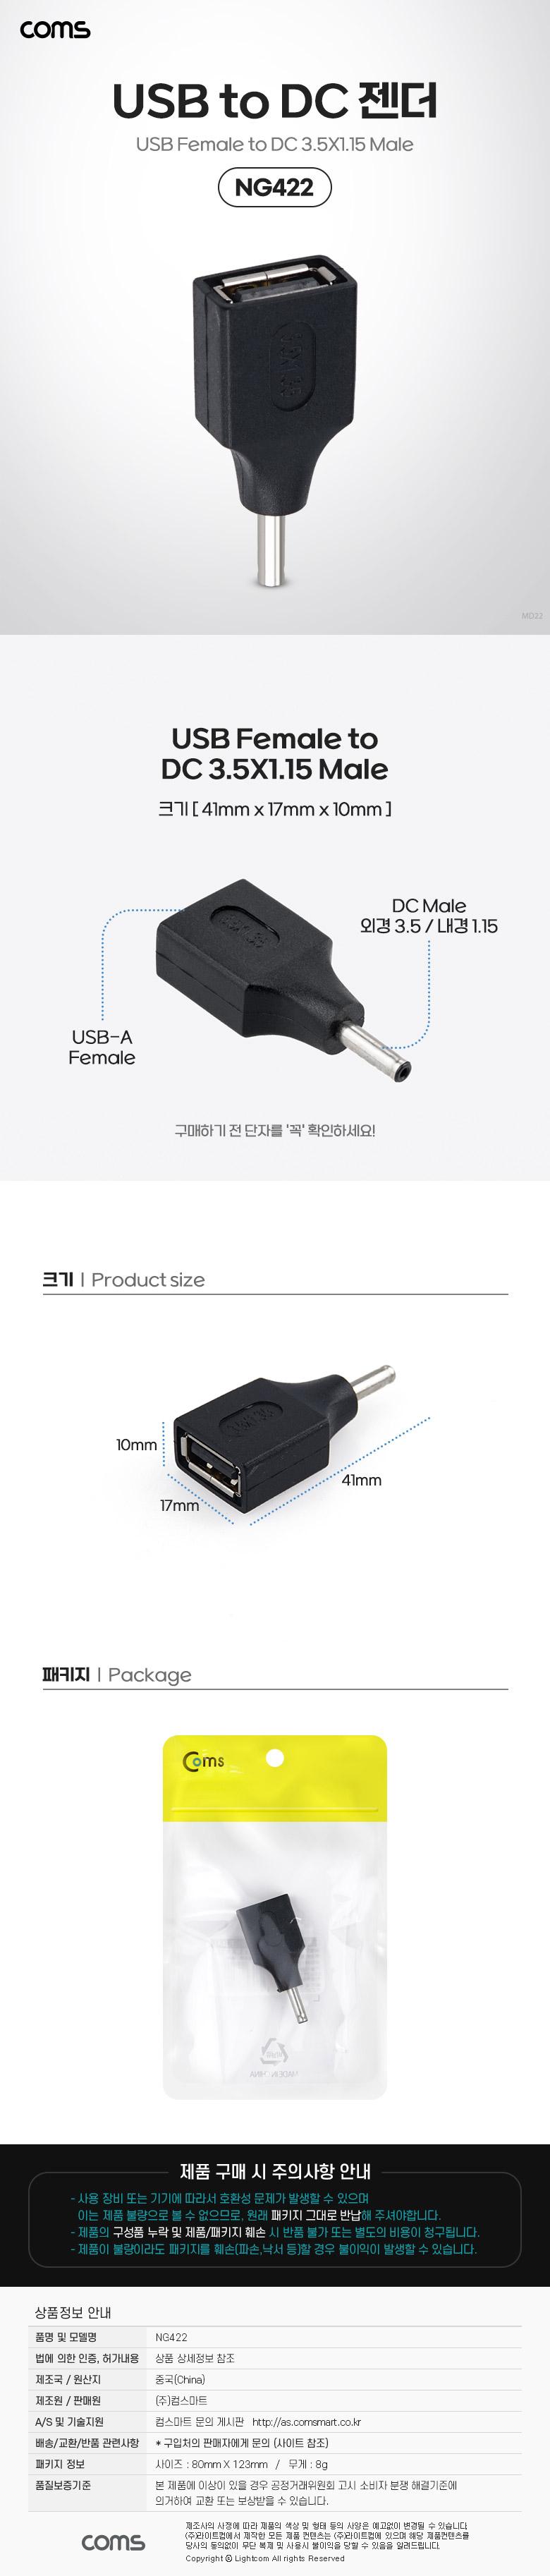 Coms USB   USB 2.0 A F to DC 3.5x1.15 M PC USB ǻͿ DC USBTODC  ǻͿǰ PCǰ